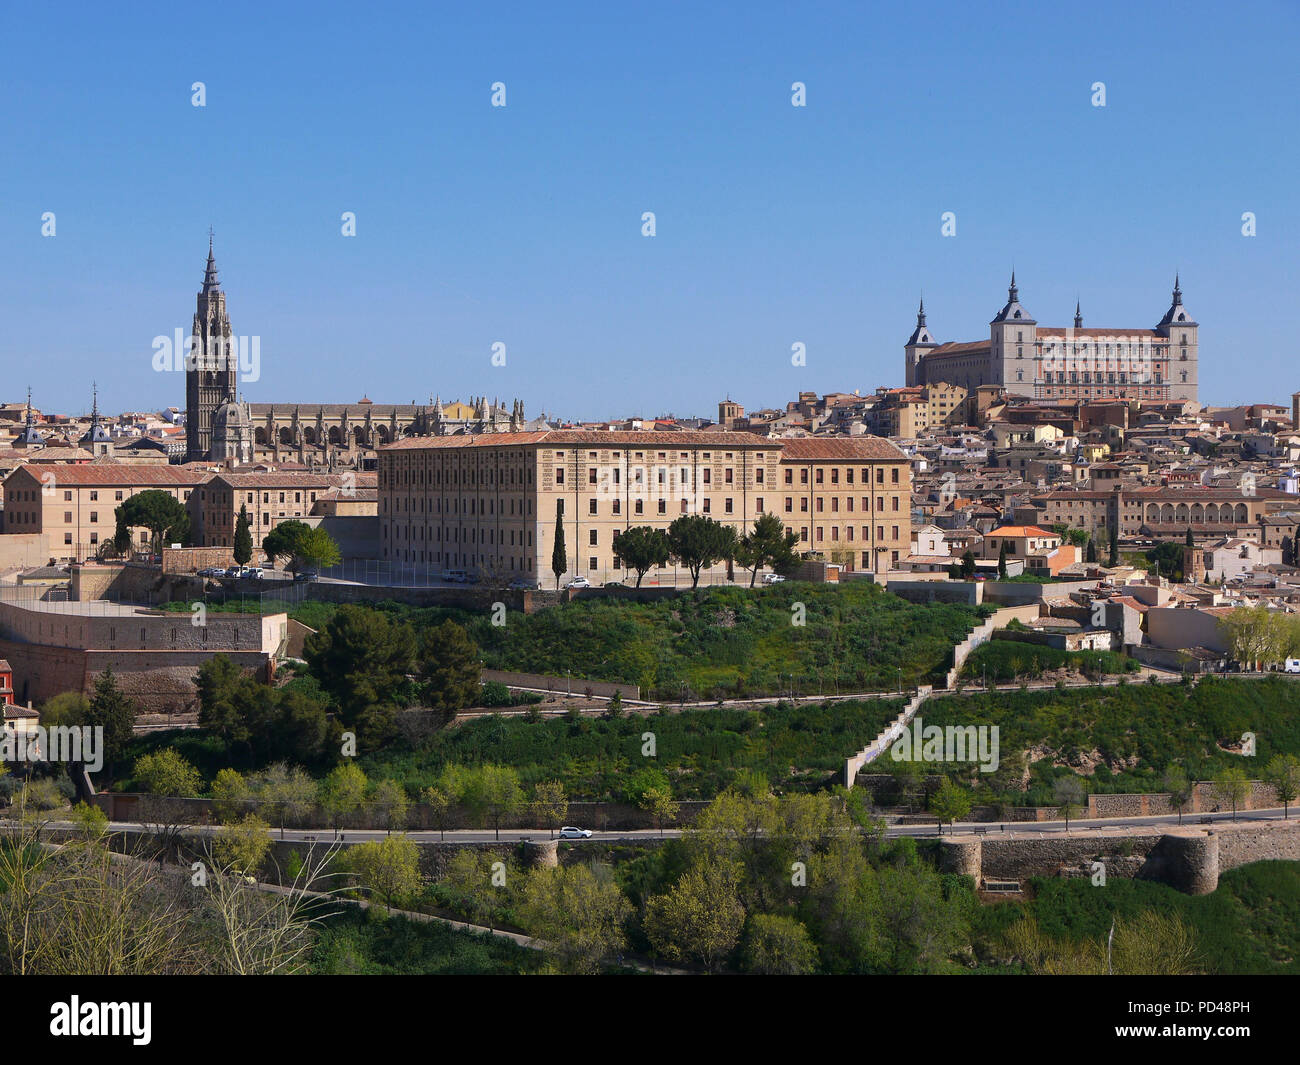 Vista panorámica del casco medieval de la ciudad de Toledo, España Foto de stock